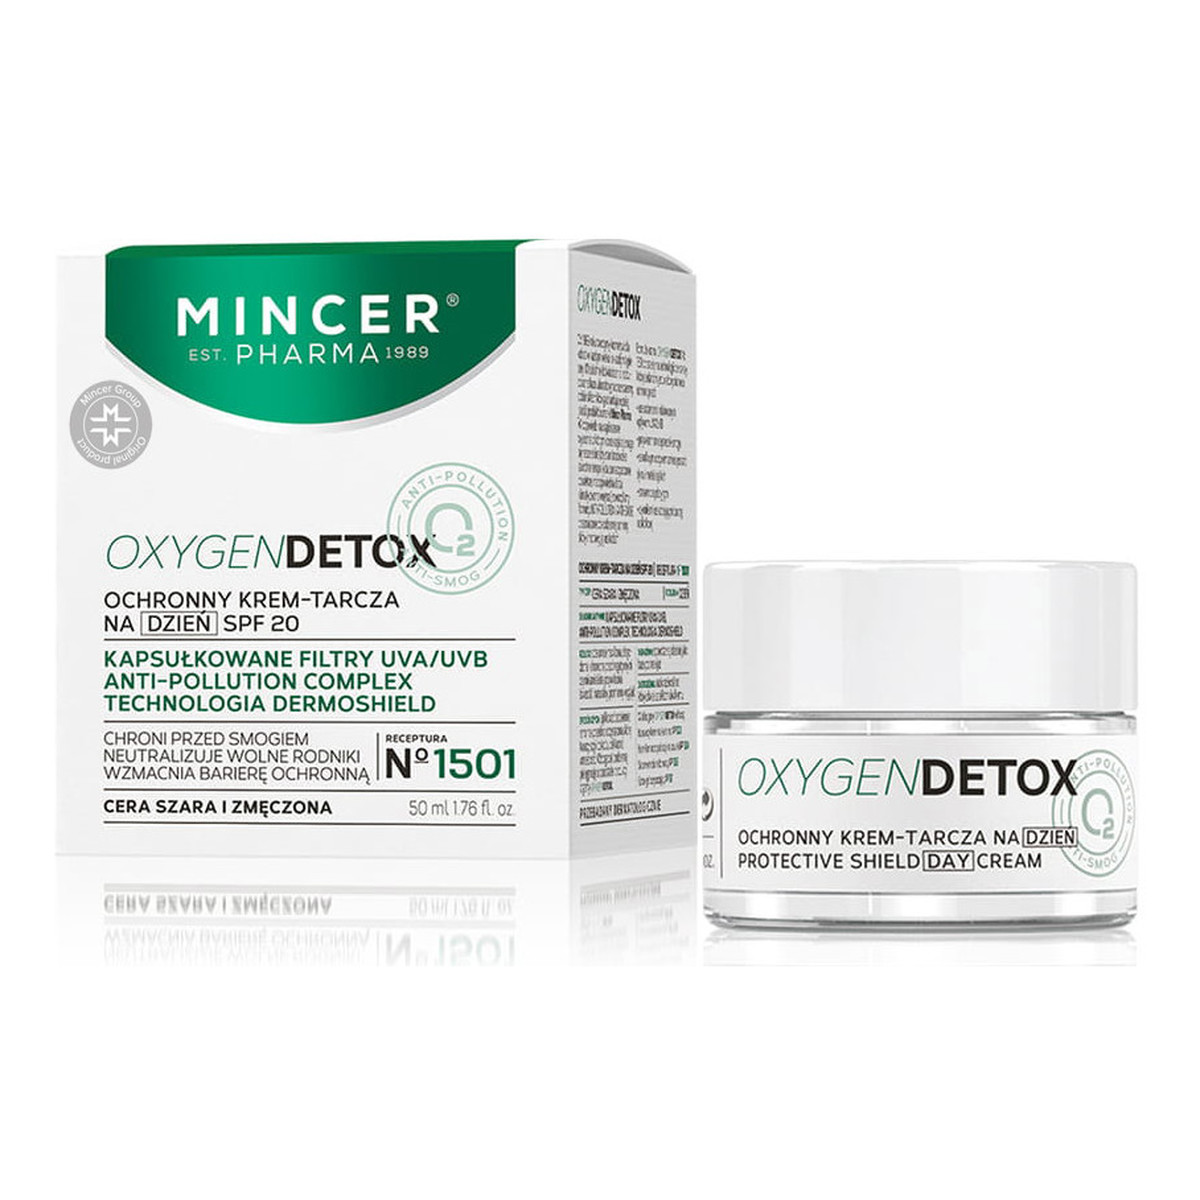 Mincer Pharma Oxygen Detox Ochronny krem-tarcza na dzień SPF20 No 1501 50ml